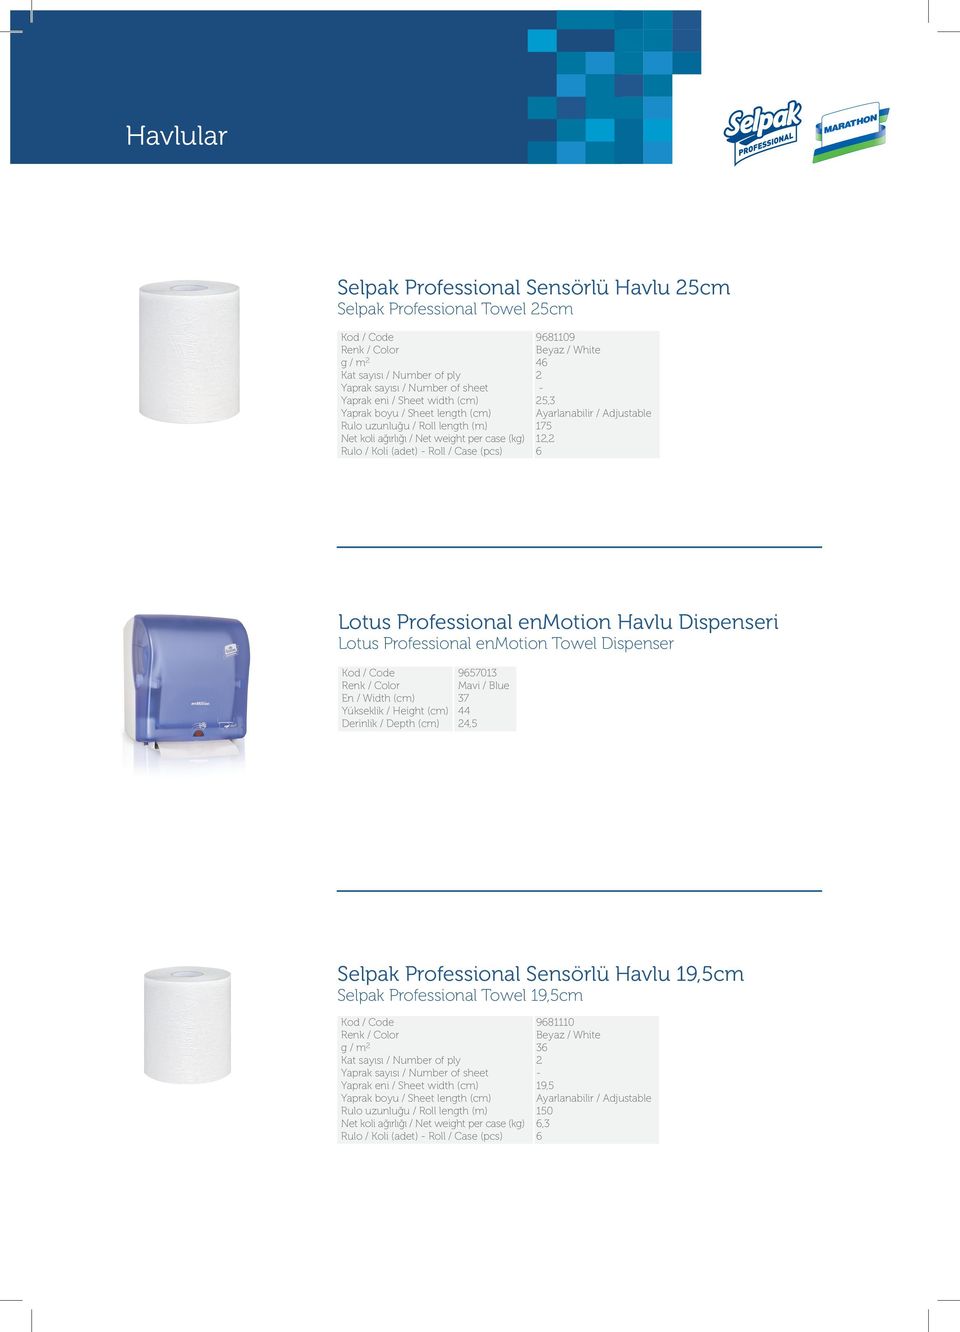 enmotion Towel Dispenser Yükseklik / Height (cm) 9657013 Mavi / Blue 37 44 4,5 Selpak Professional Sensörlü Havlu 19,5cm Selpak